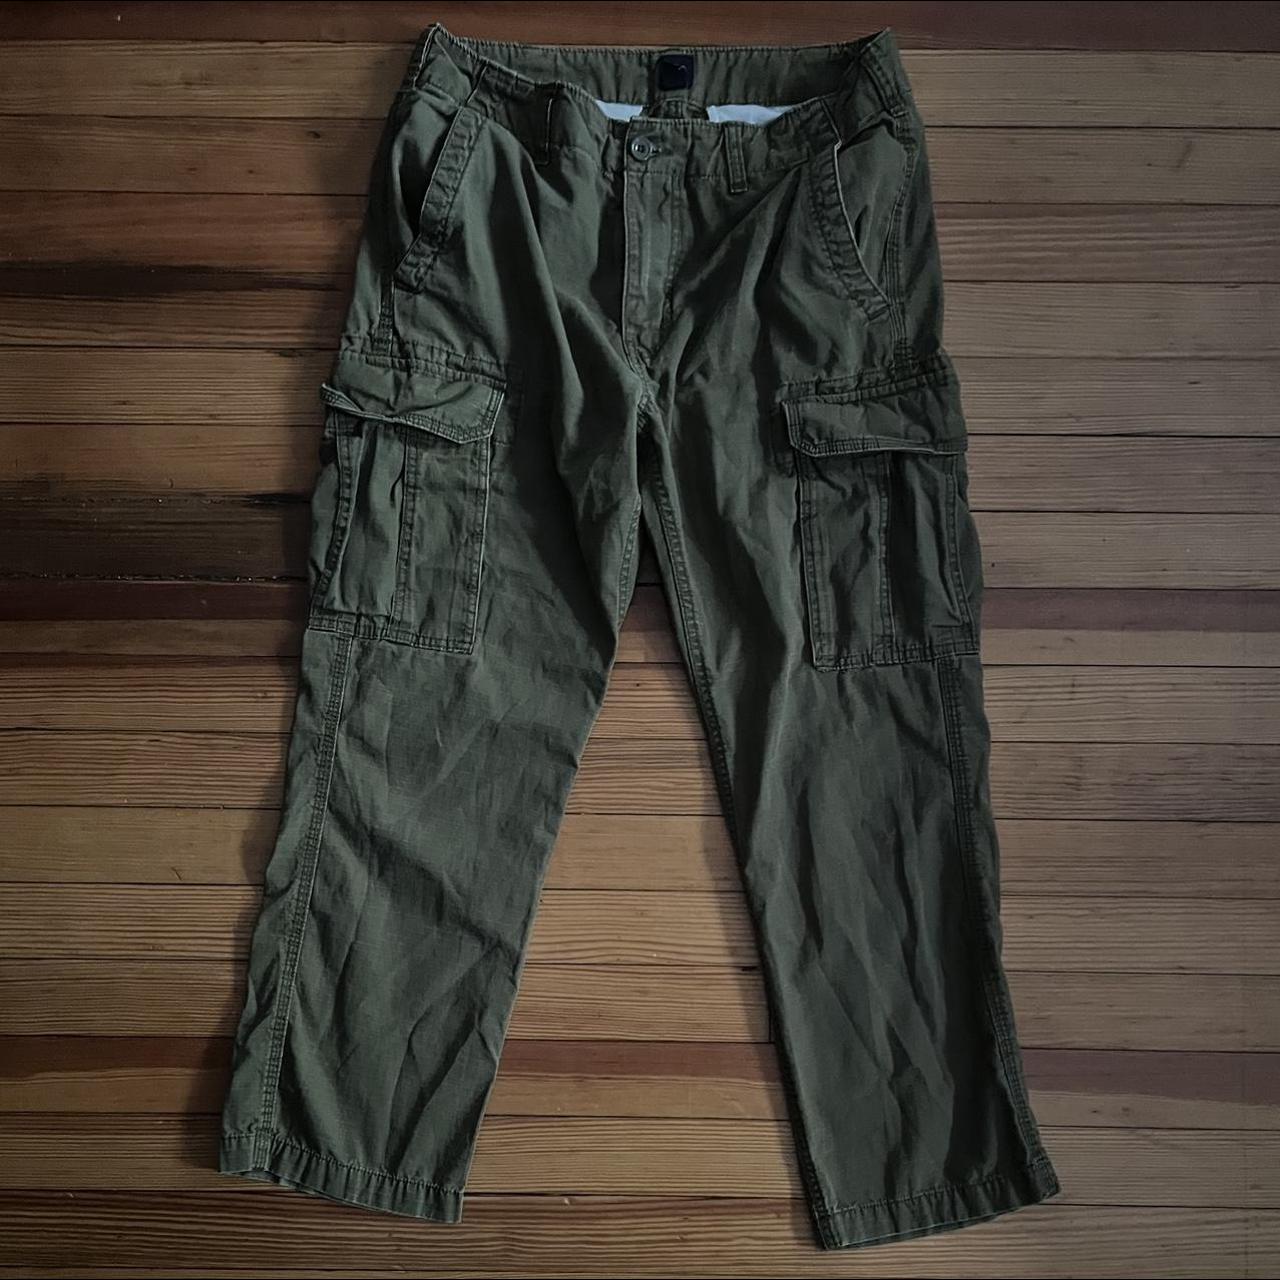 Buy Gap Poplin Cargo Trousers from the Gap online shop